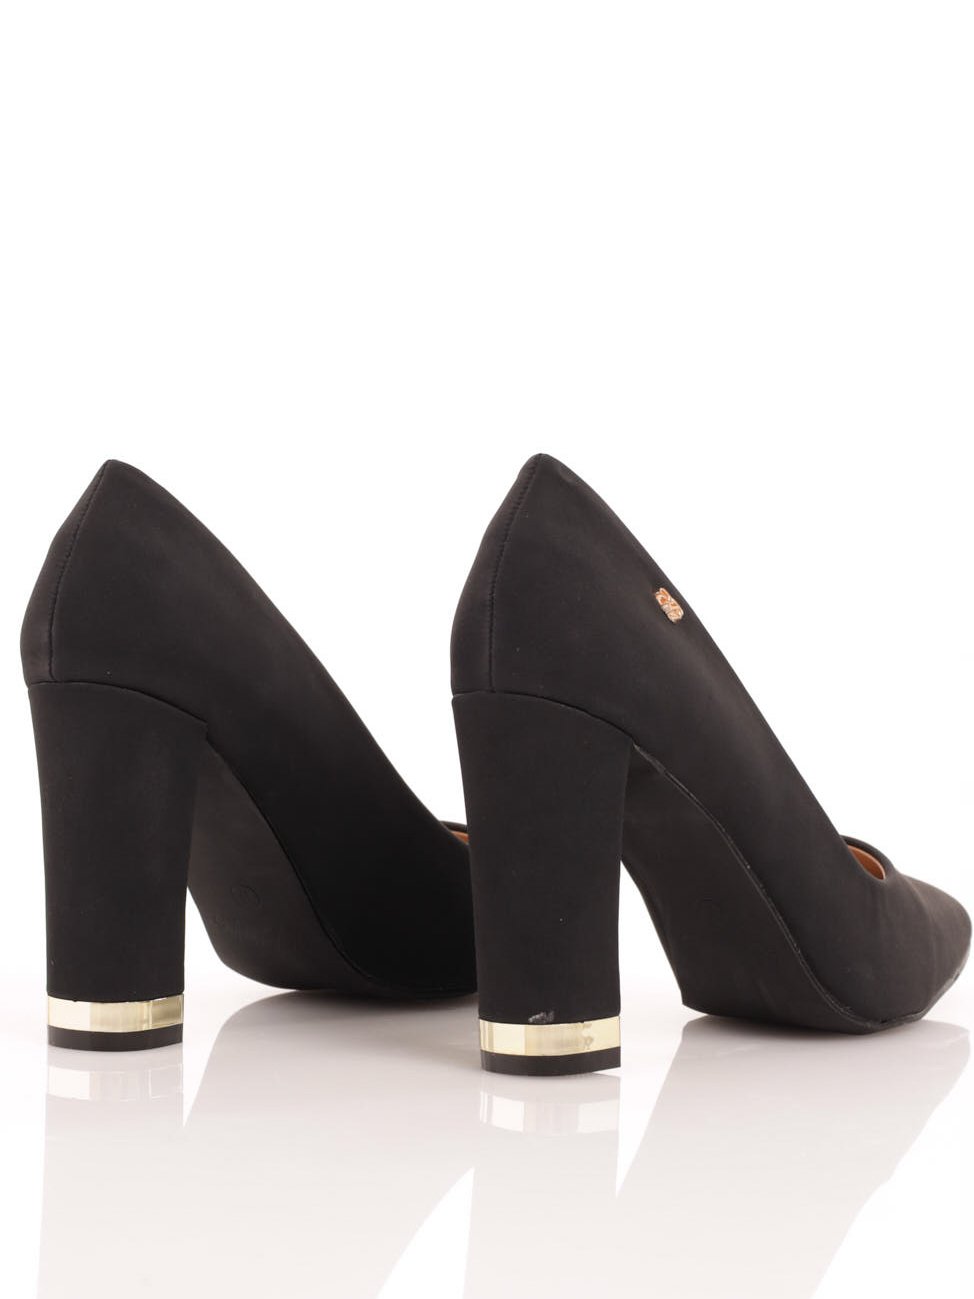 John Lewis & Partners Alyssa Low Heel Slingback Court Shoes, Navy, 3